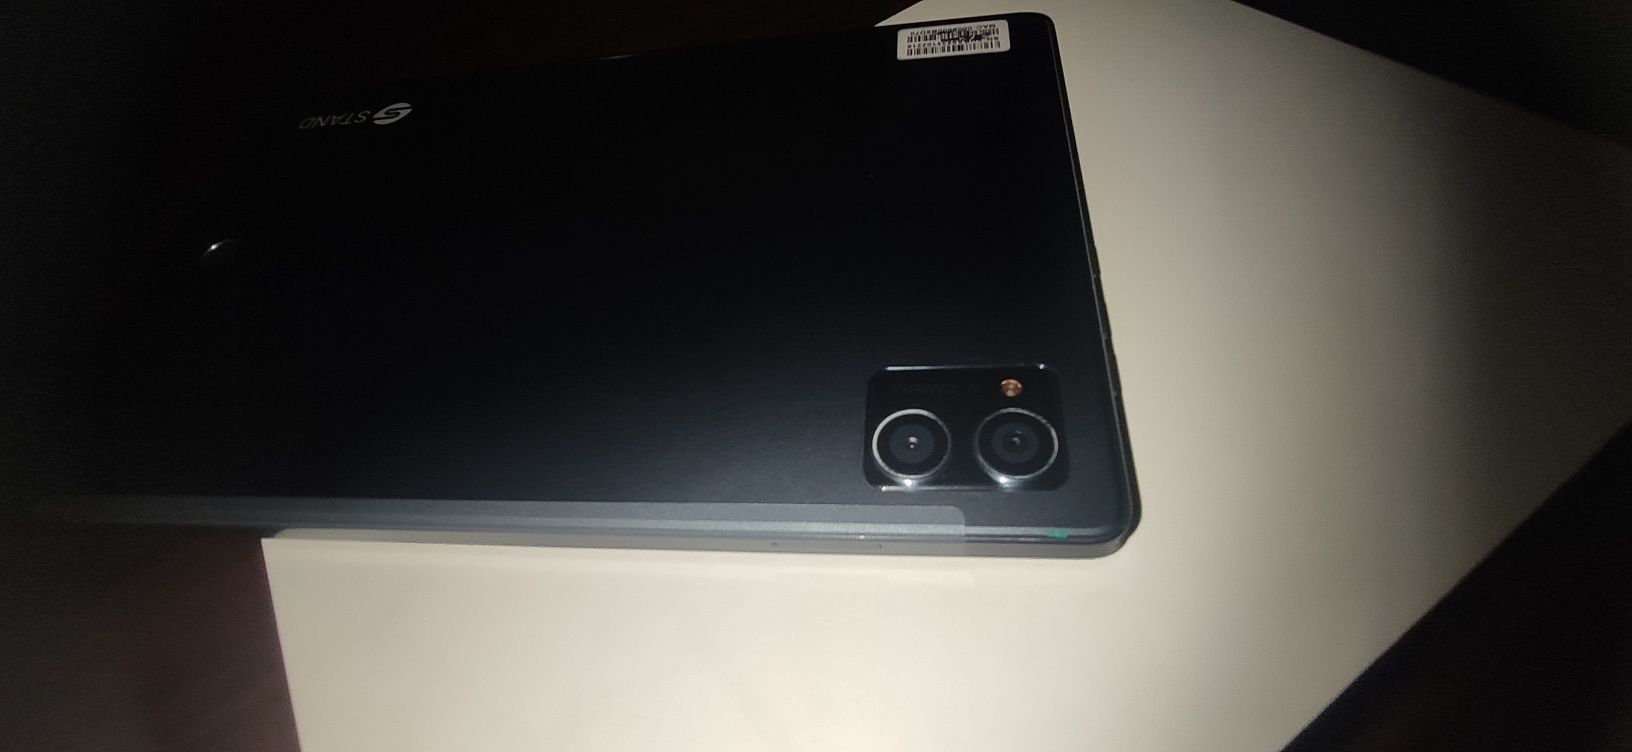 Планшет Tablet PC STAND почти новый срочно продать